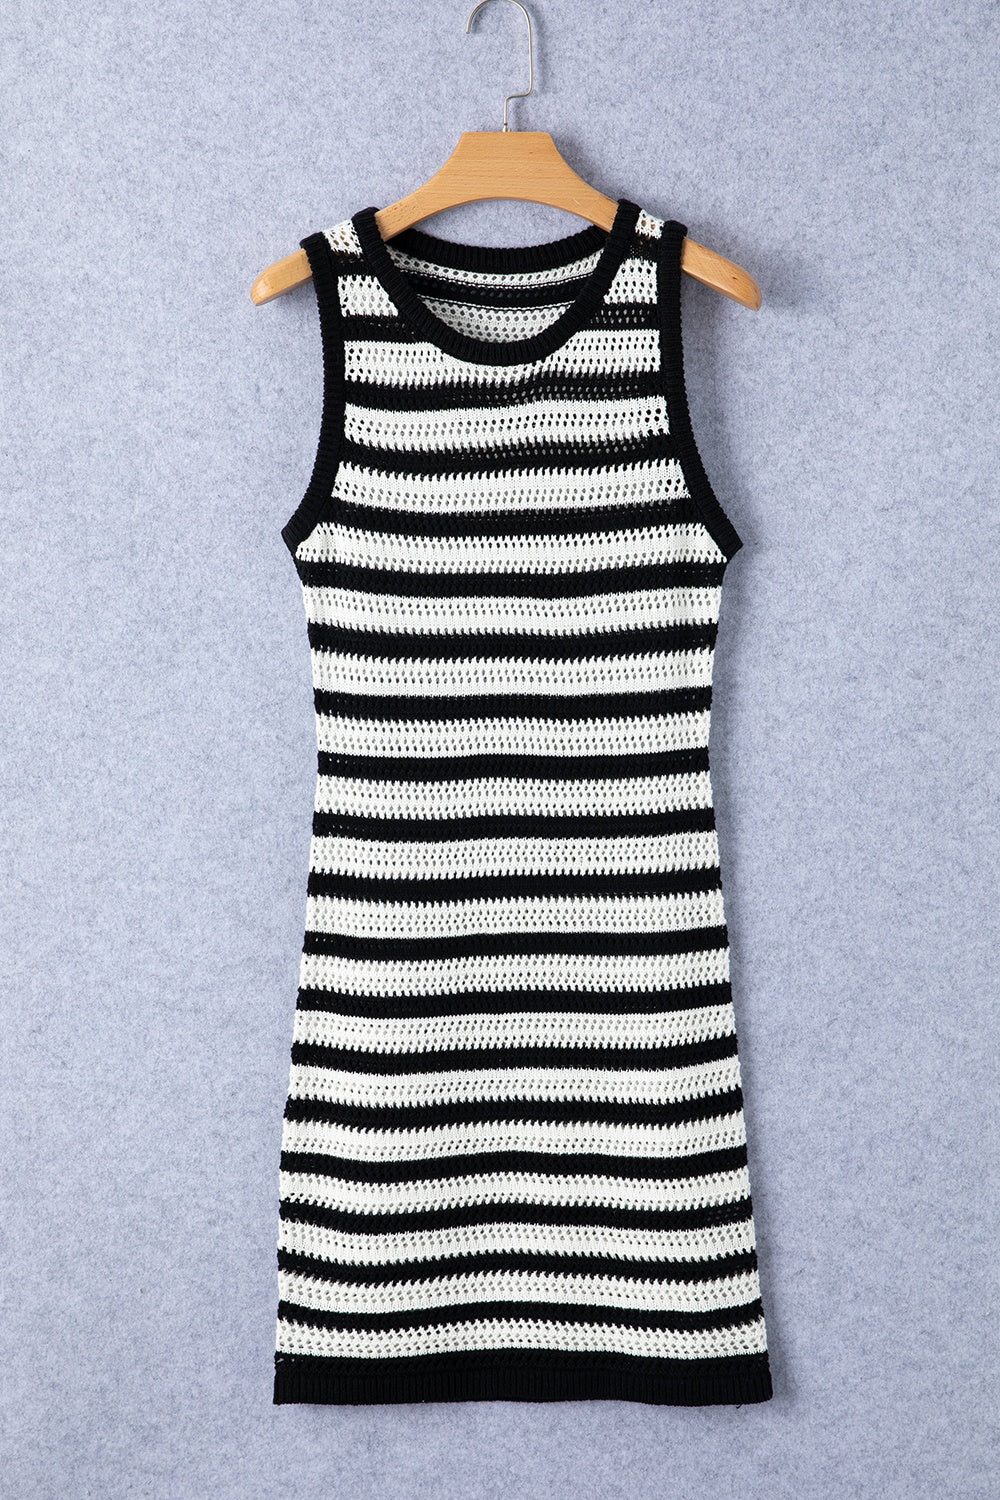 TEEK - Black White Striped Wide Strap Knit Dress DRESS TEEK Trend S  